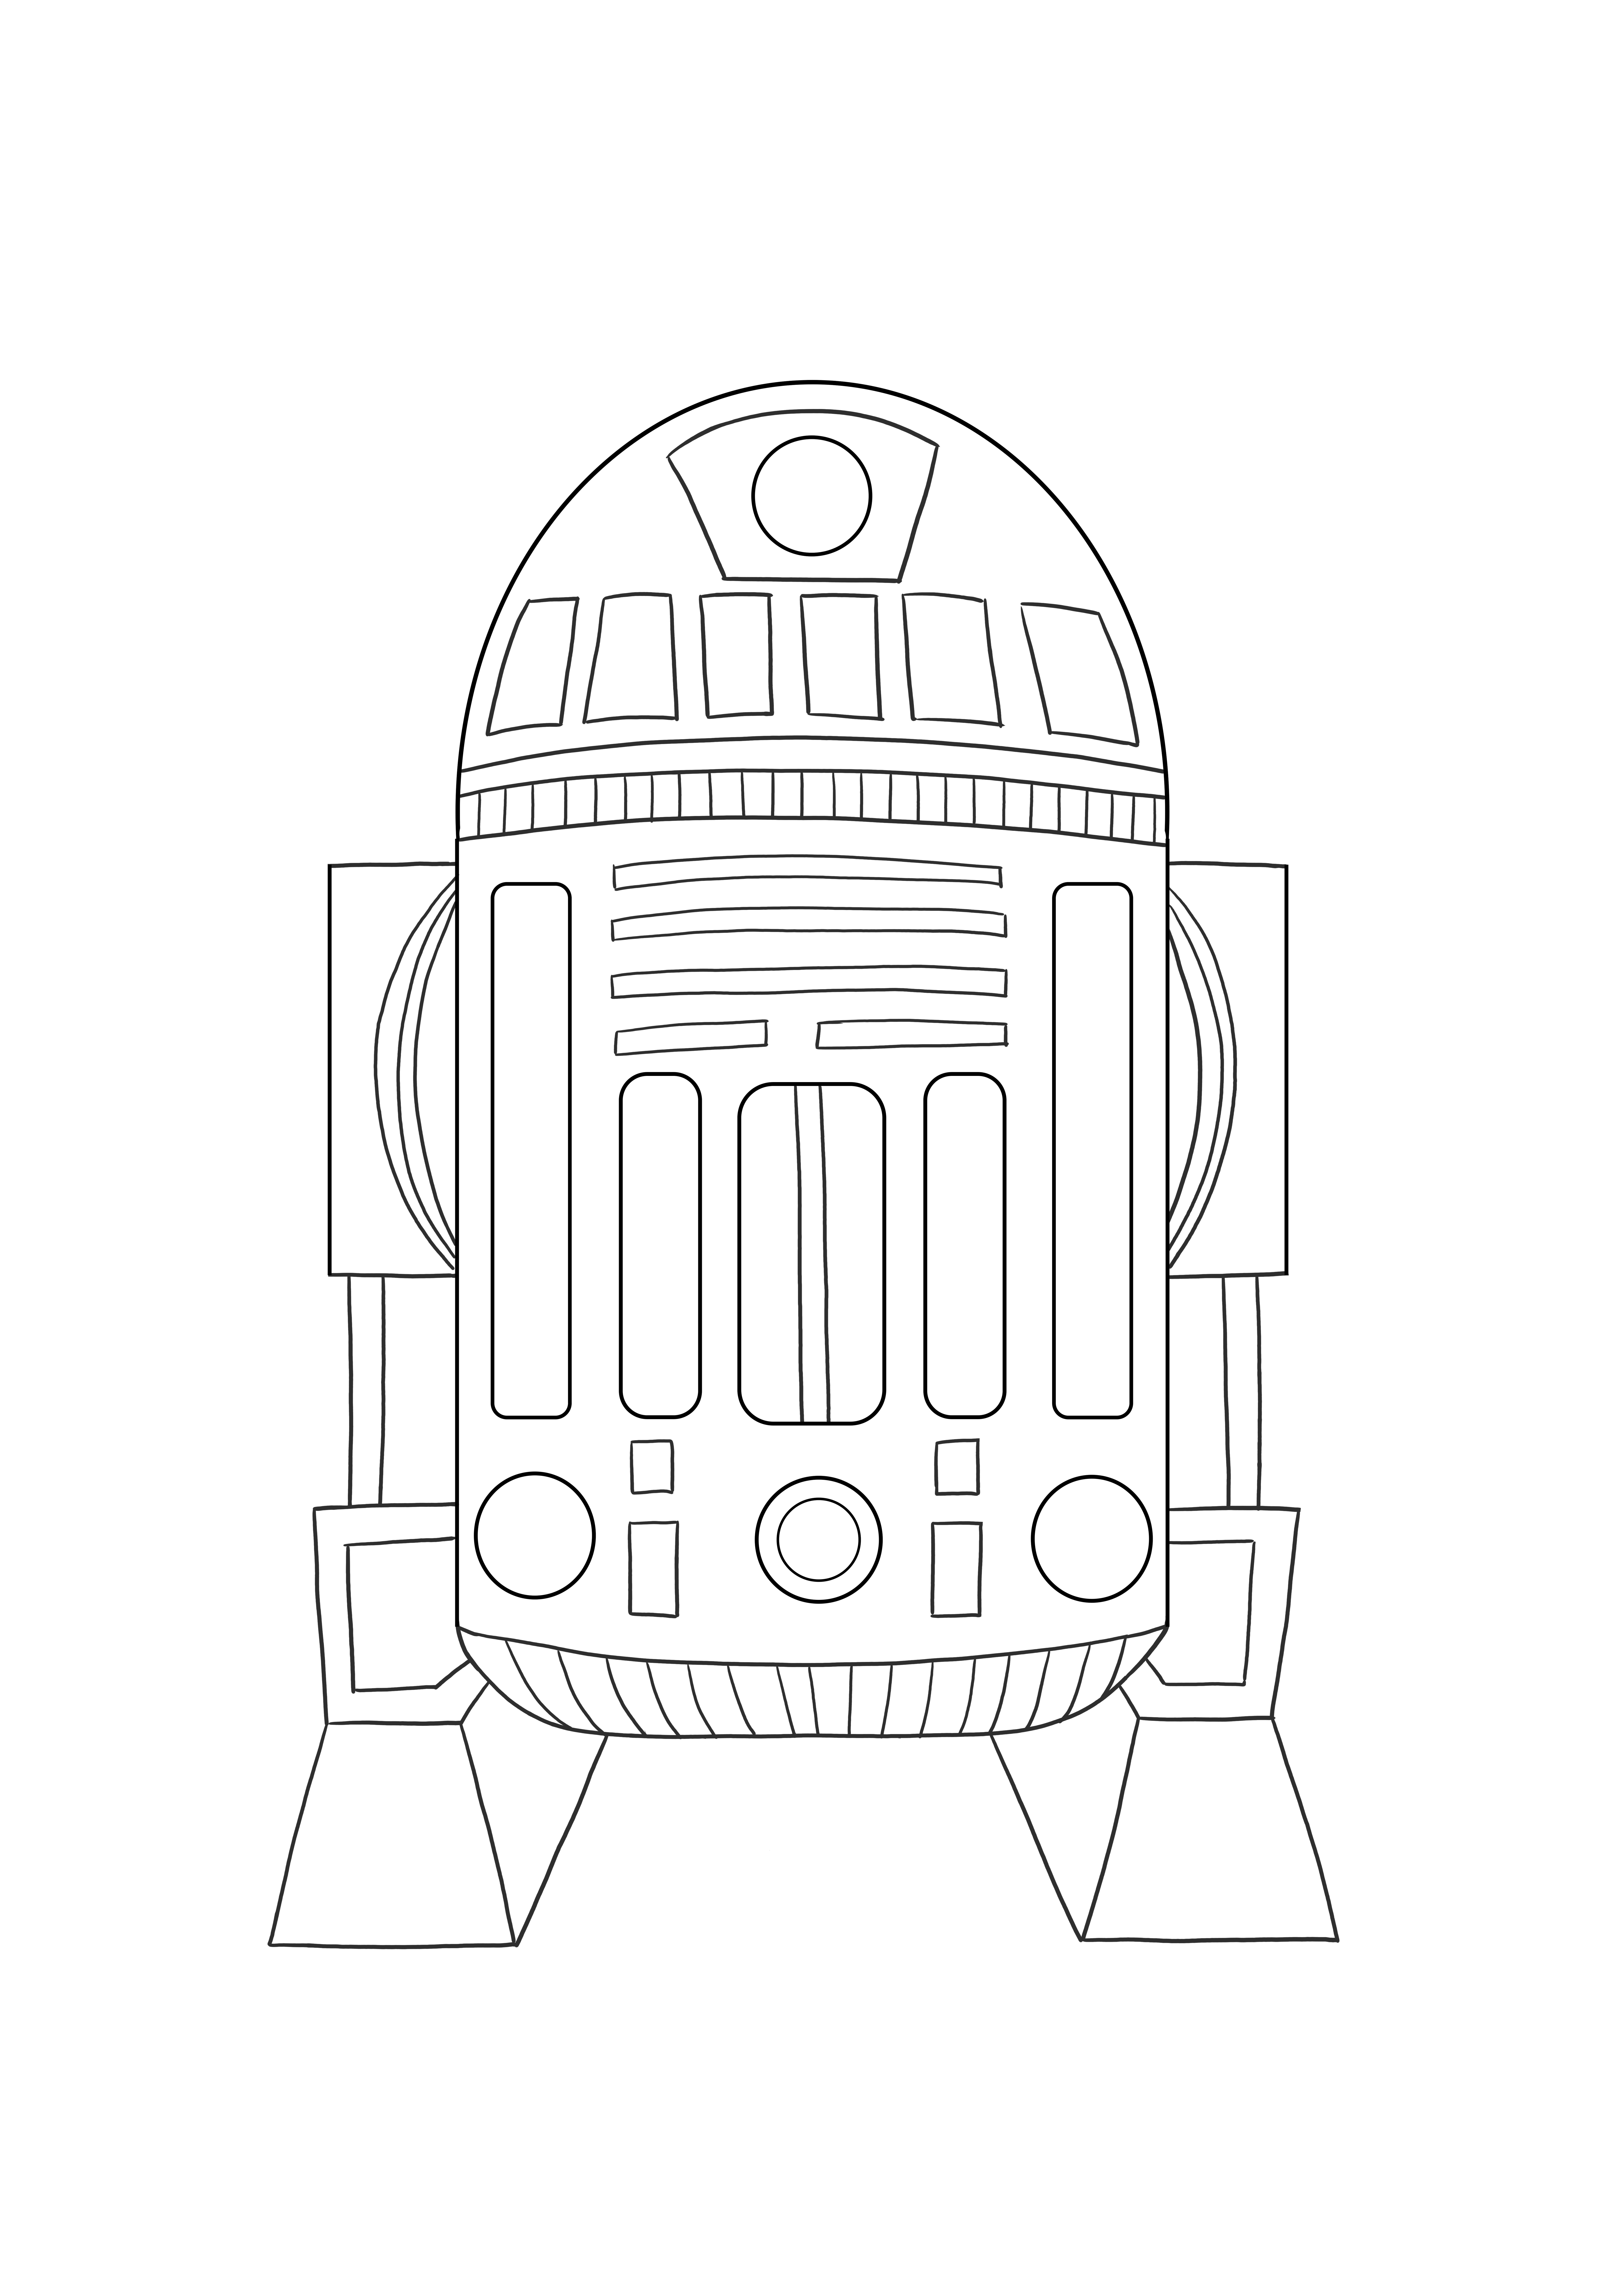 Astromed droid R2 imagem imprimível gratuita para colorir para crianças